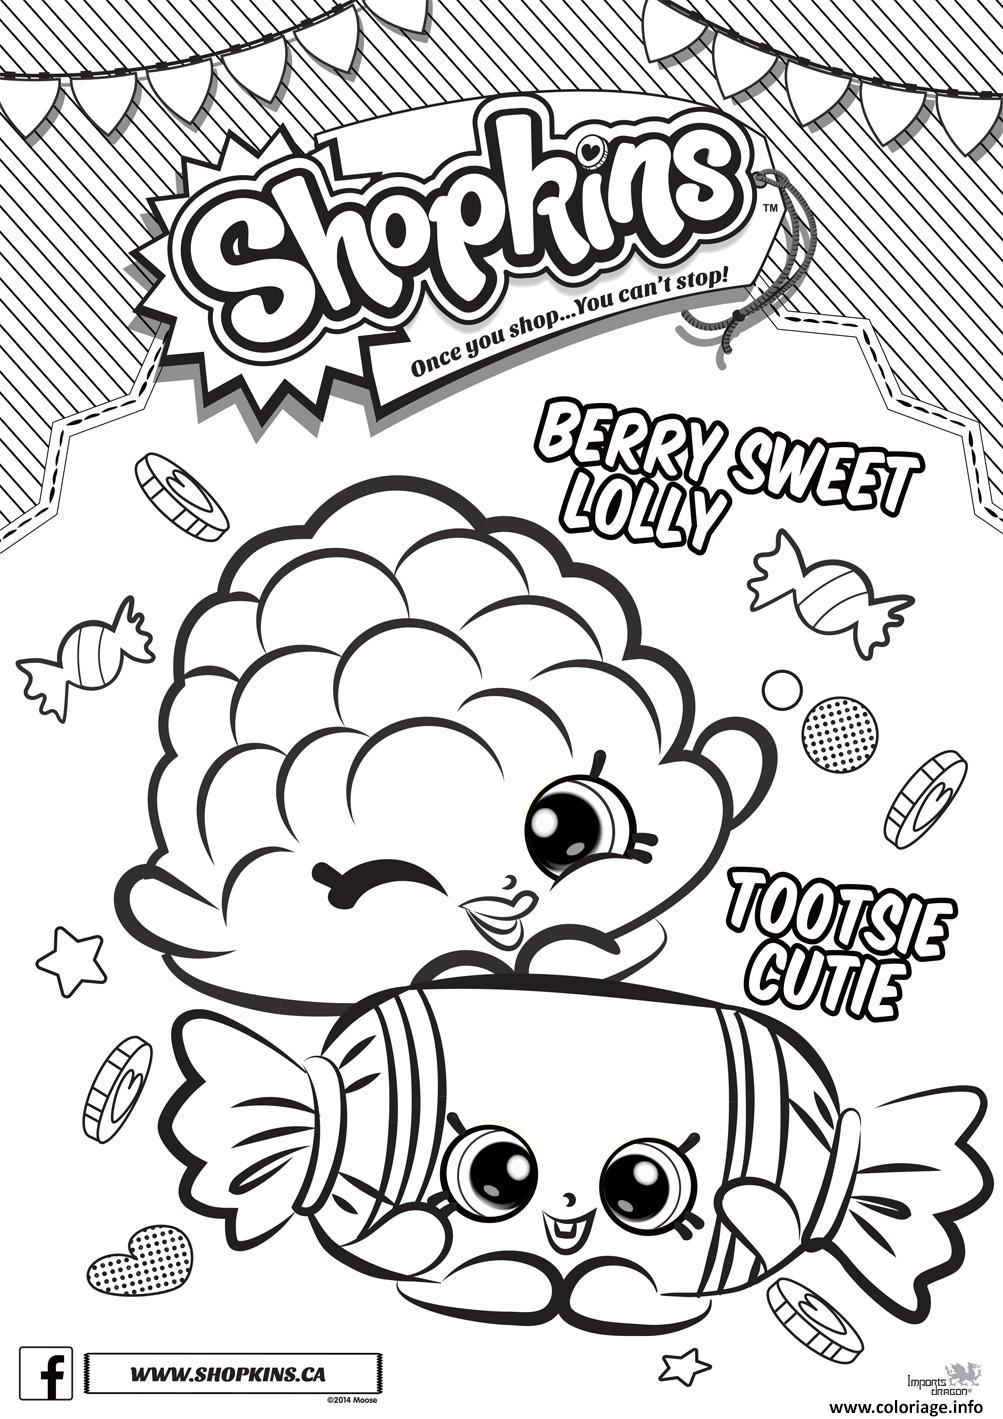 Dessin shopkins berry sweet lolly tootsie cutie Coloriage Gratuit à Imprimer